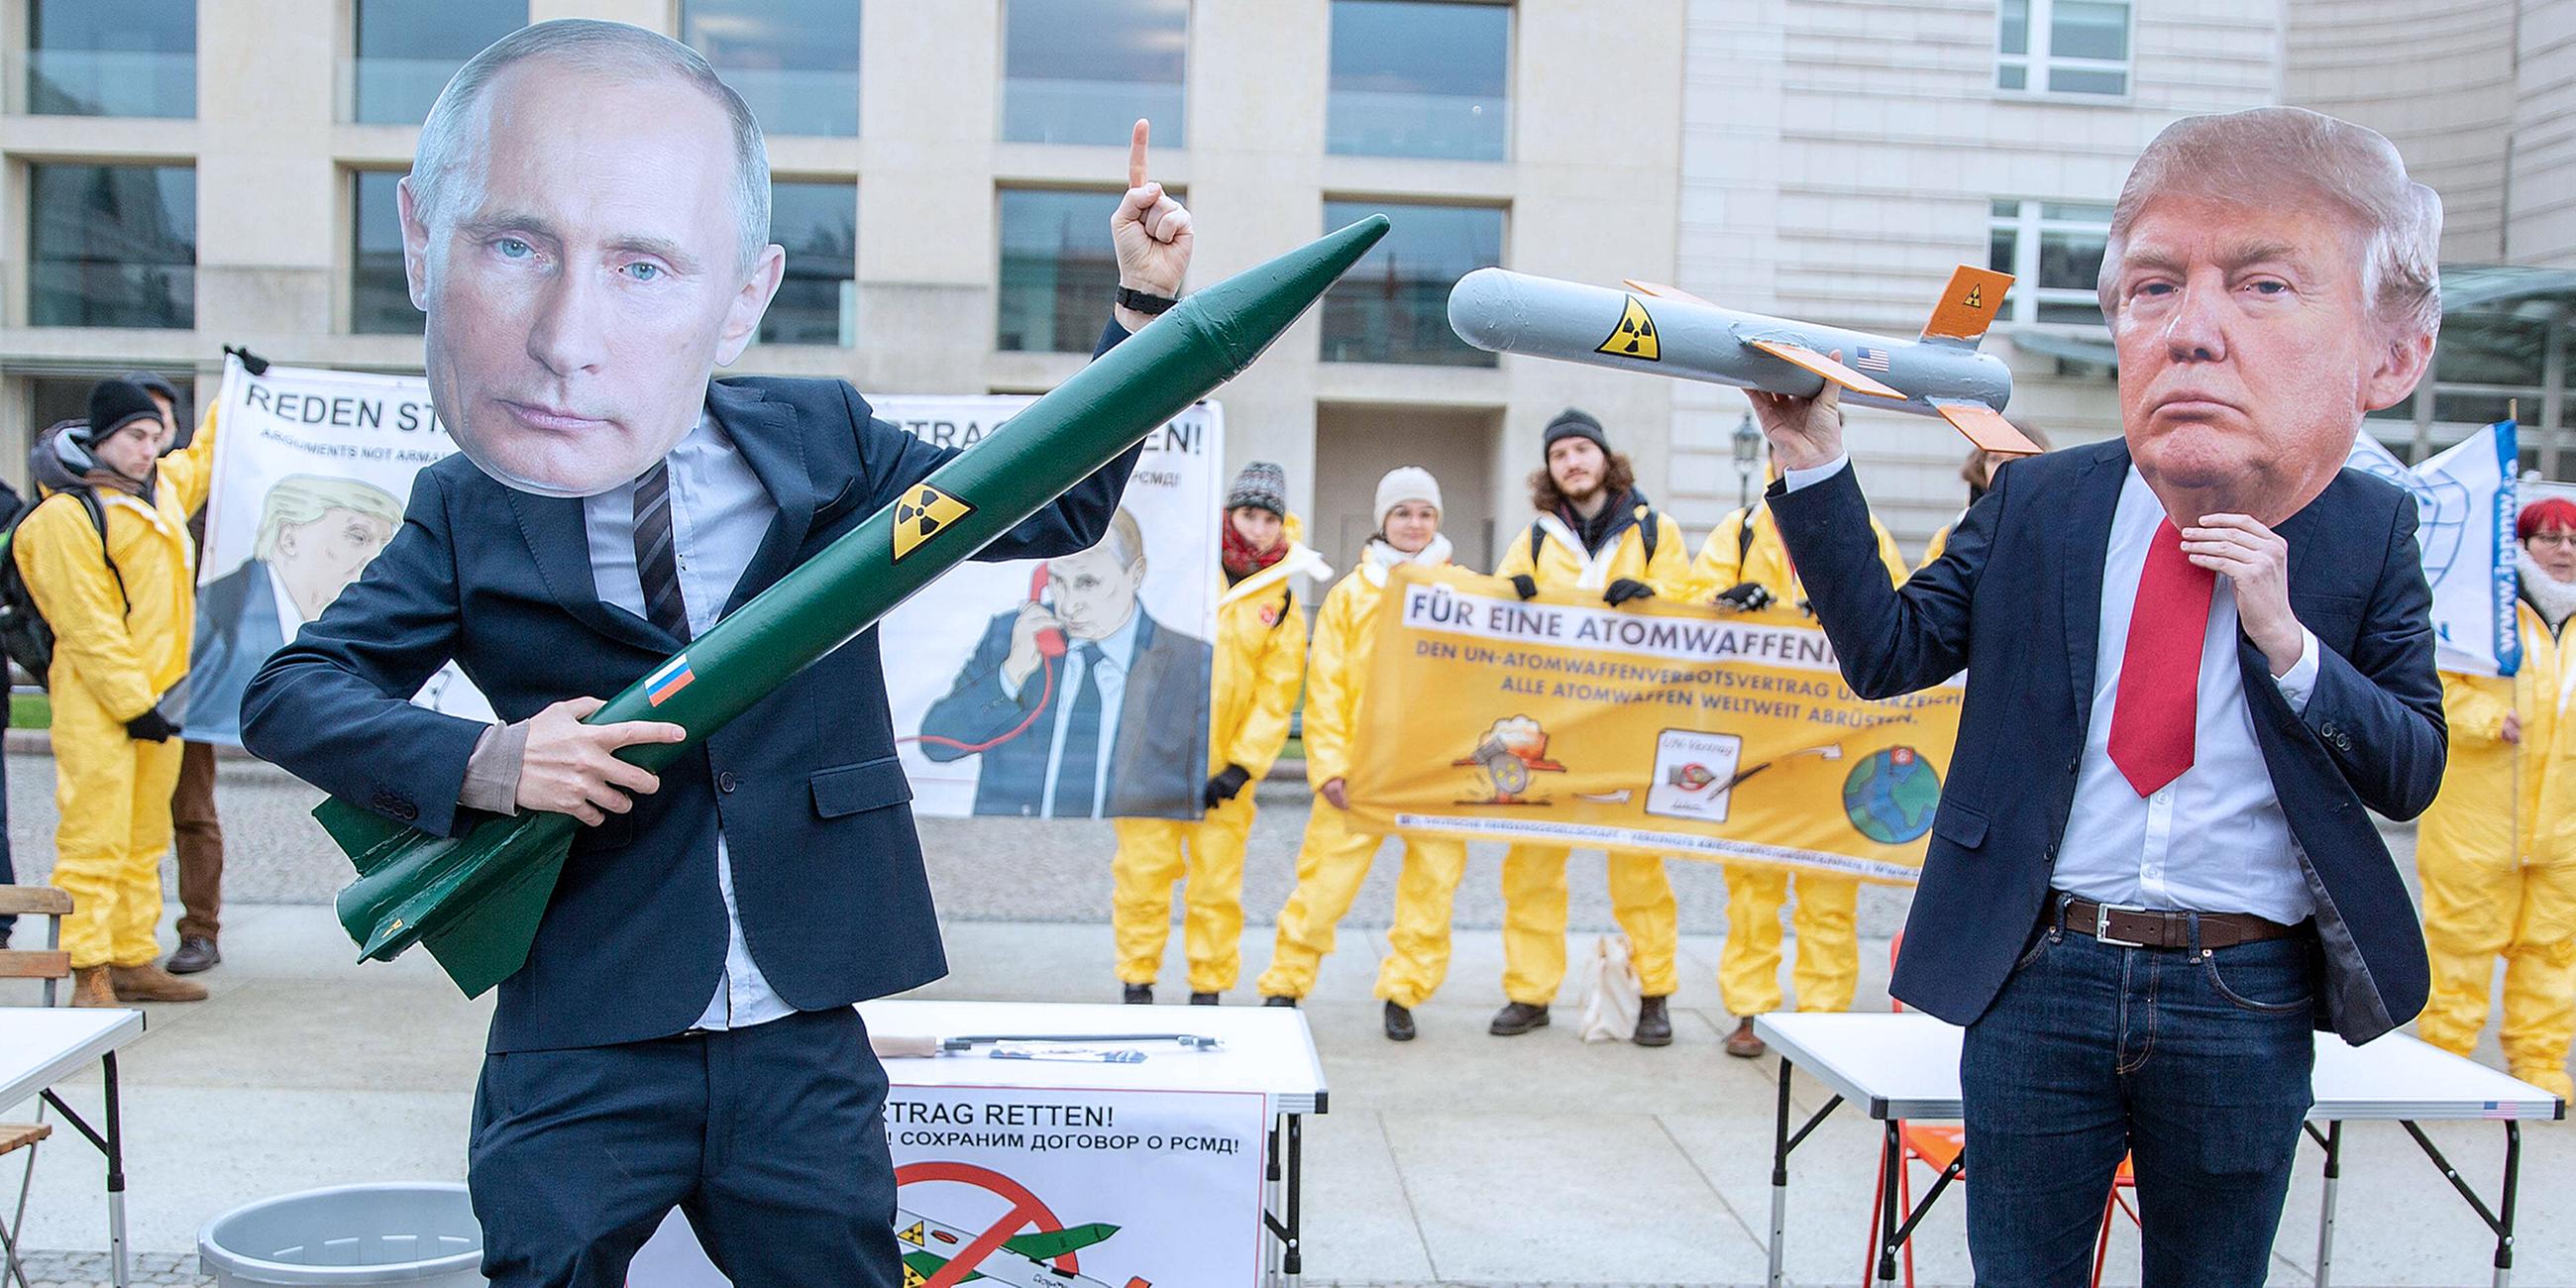 Protest-Aktion: Reden statt ruesten! Atomwaffen abschaffen! vor der US-Botschaft in Berlin am 01.02.2019